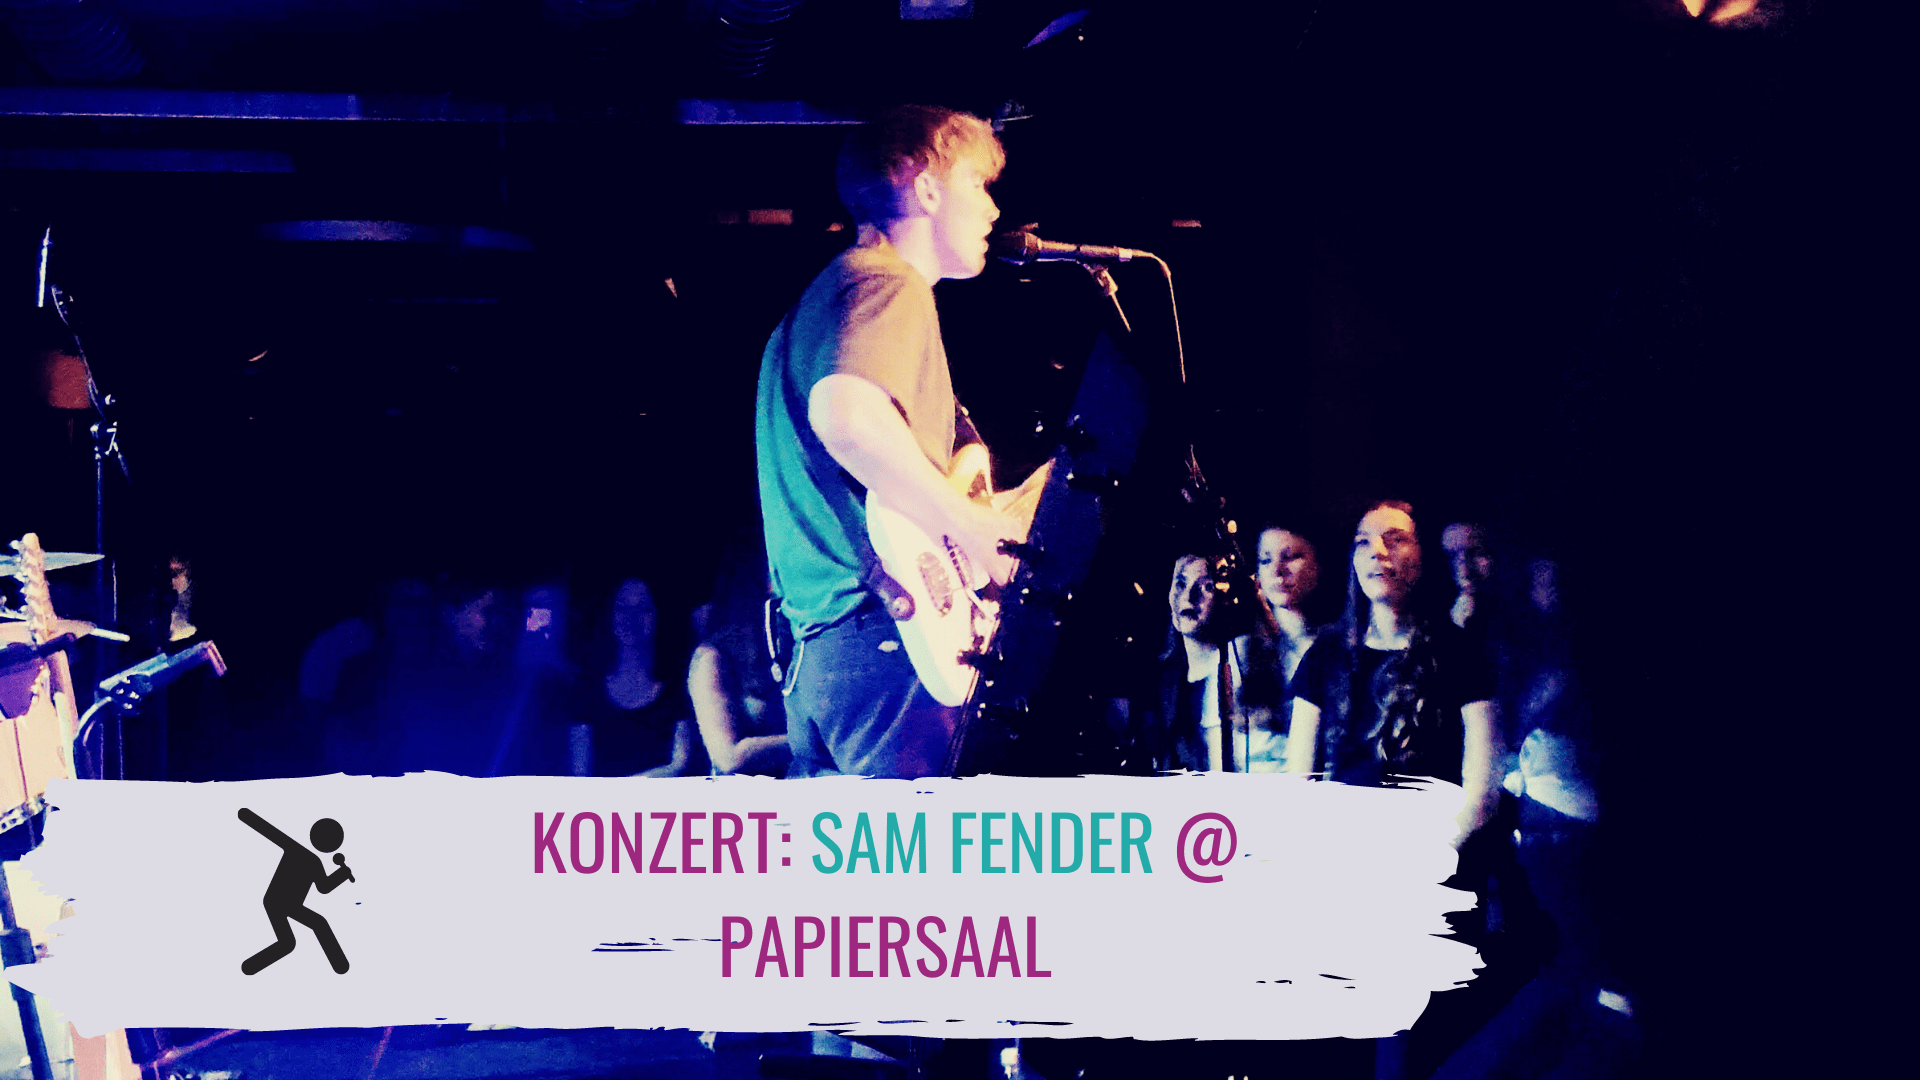 Sam Fender @ Papiersaal ZH – Homme Fatale mit Hammer-Charisma